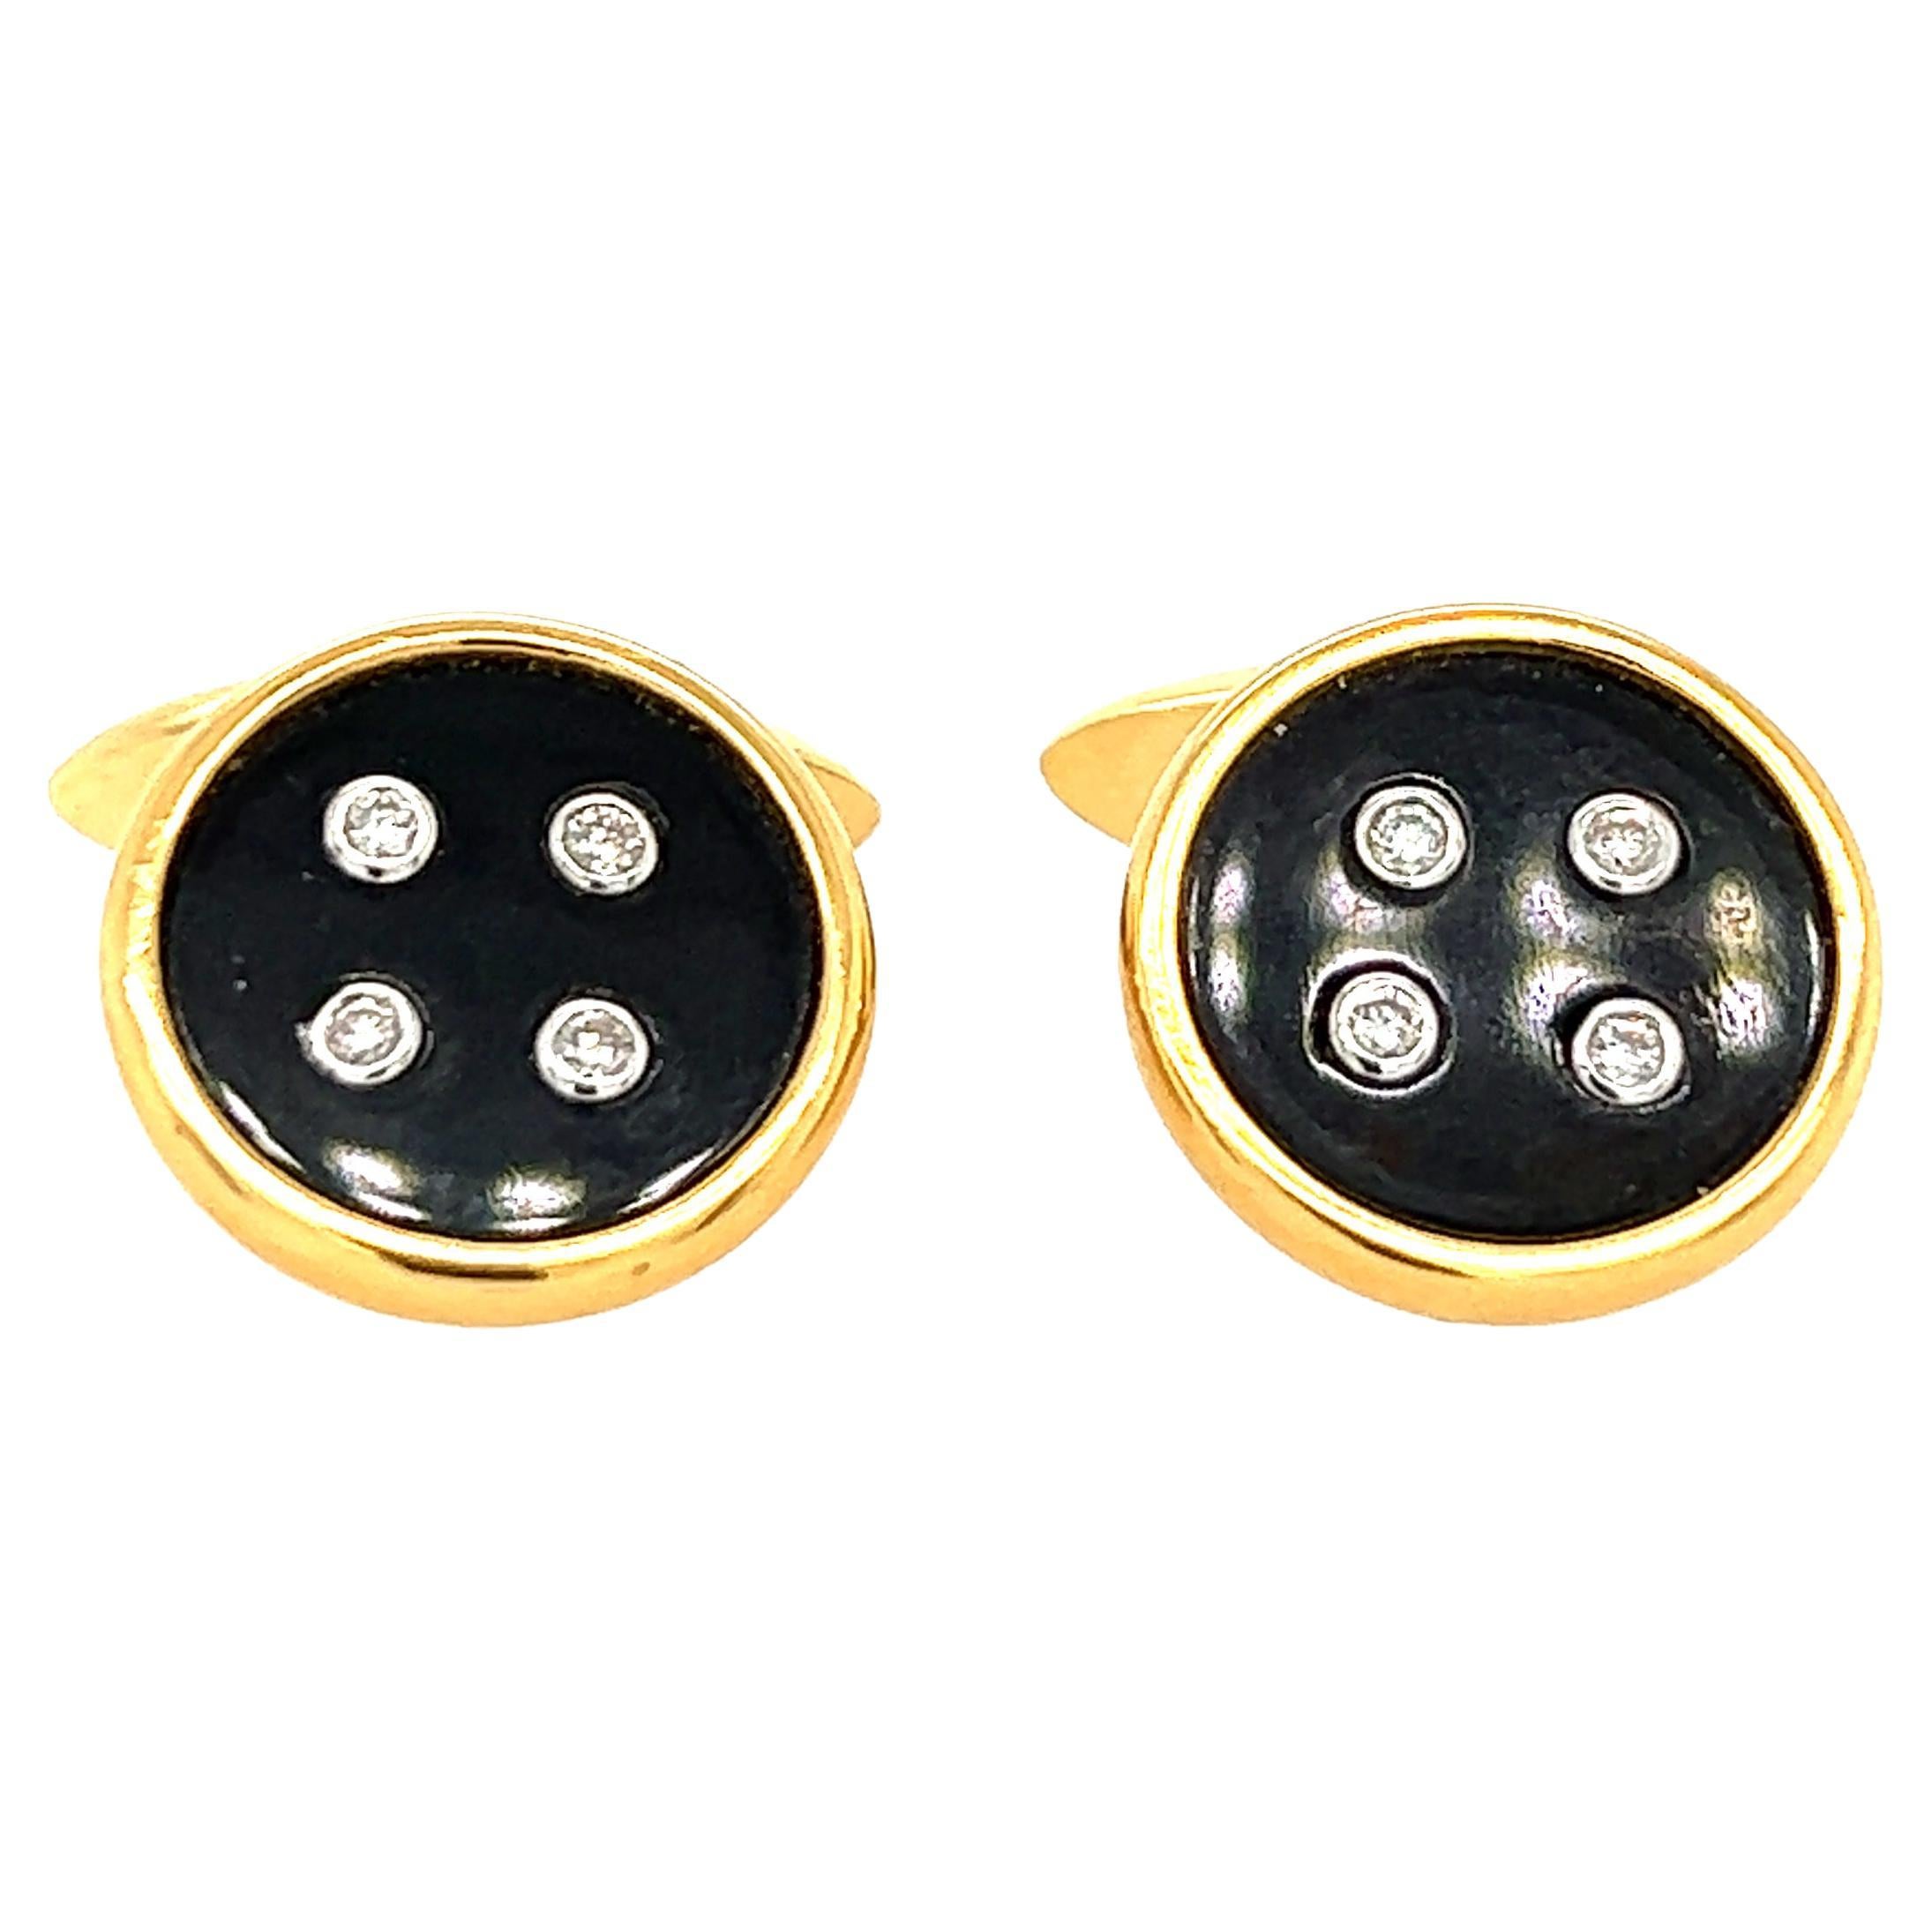 Boutons de manchette boutons en or 18 carats, diamants et onyx